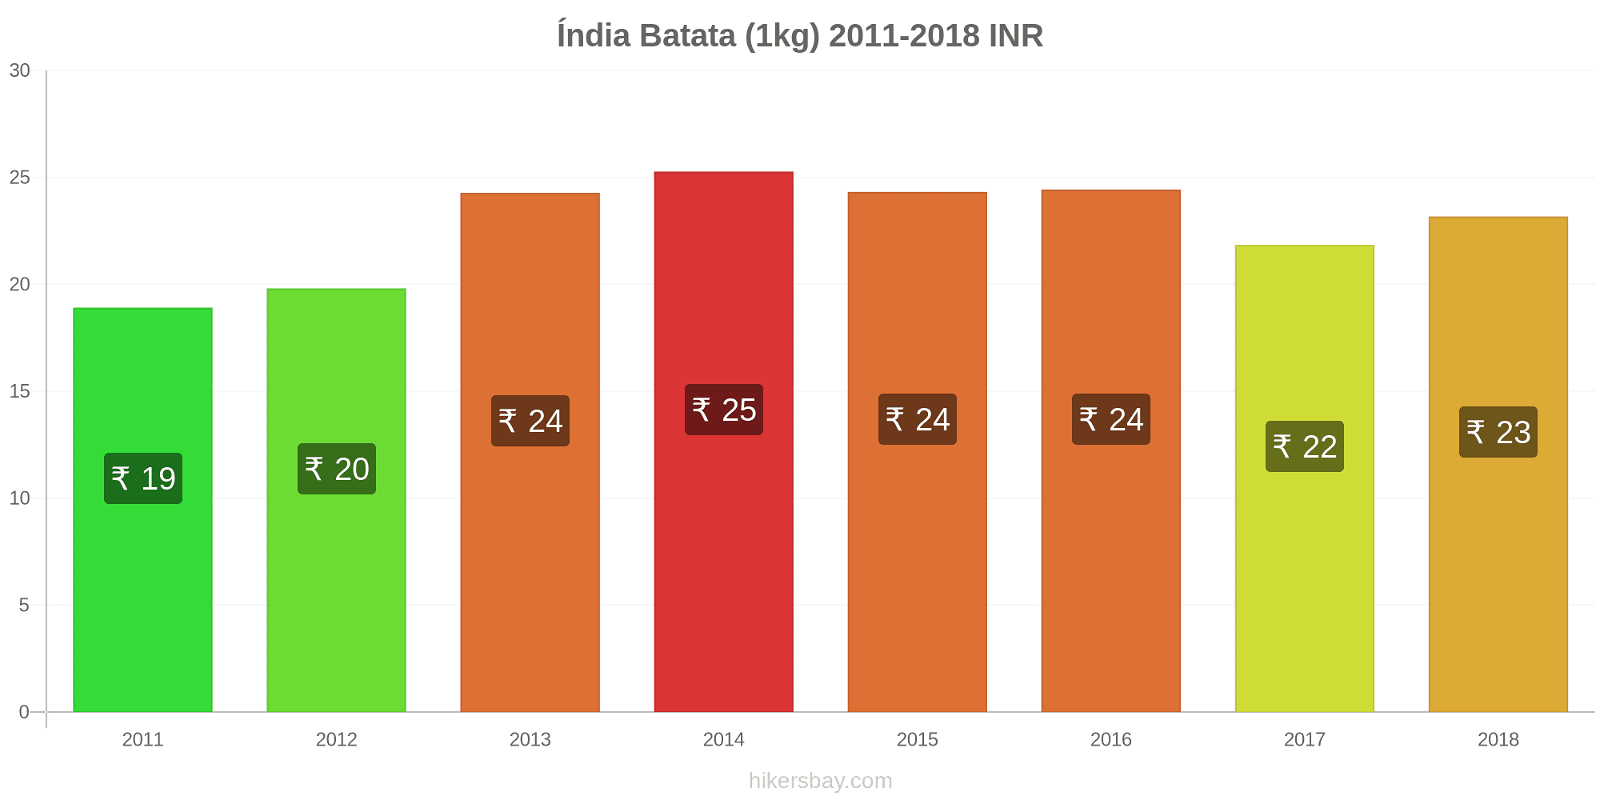 Índia mudanças de preços Batatas (1kg) hikersbay.com